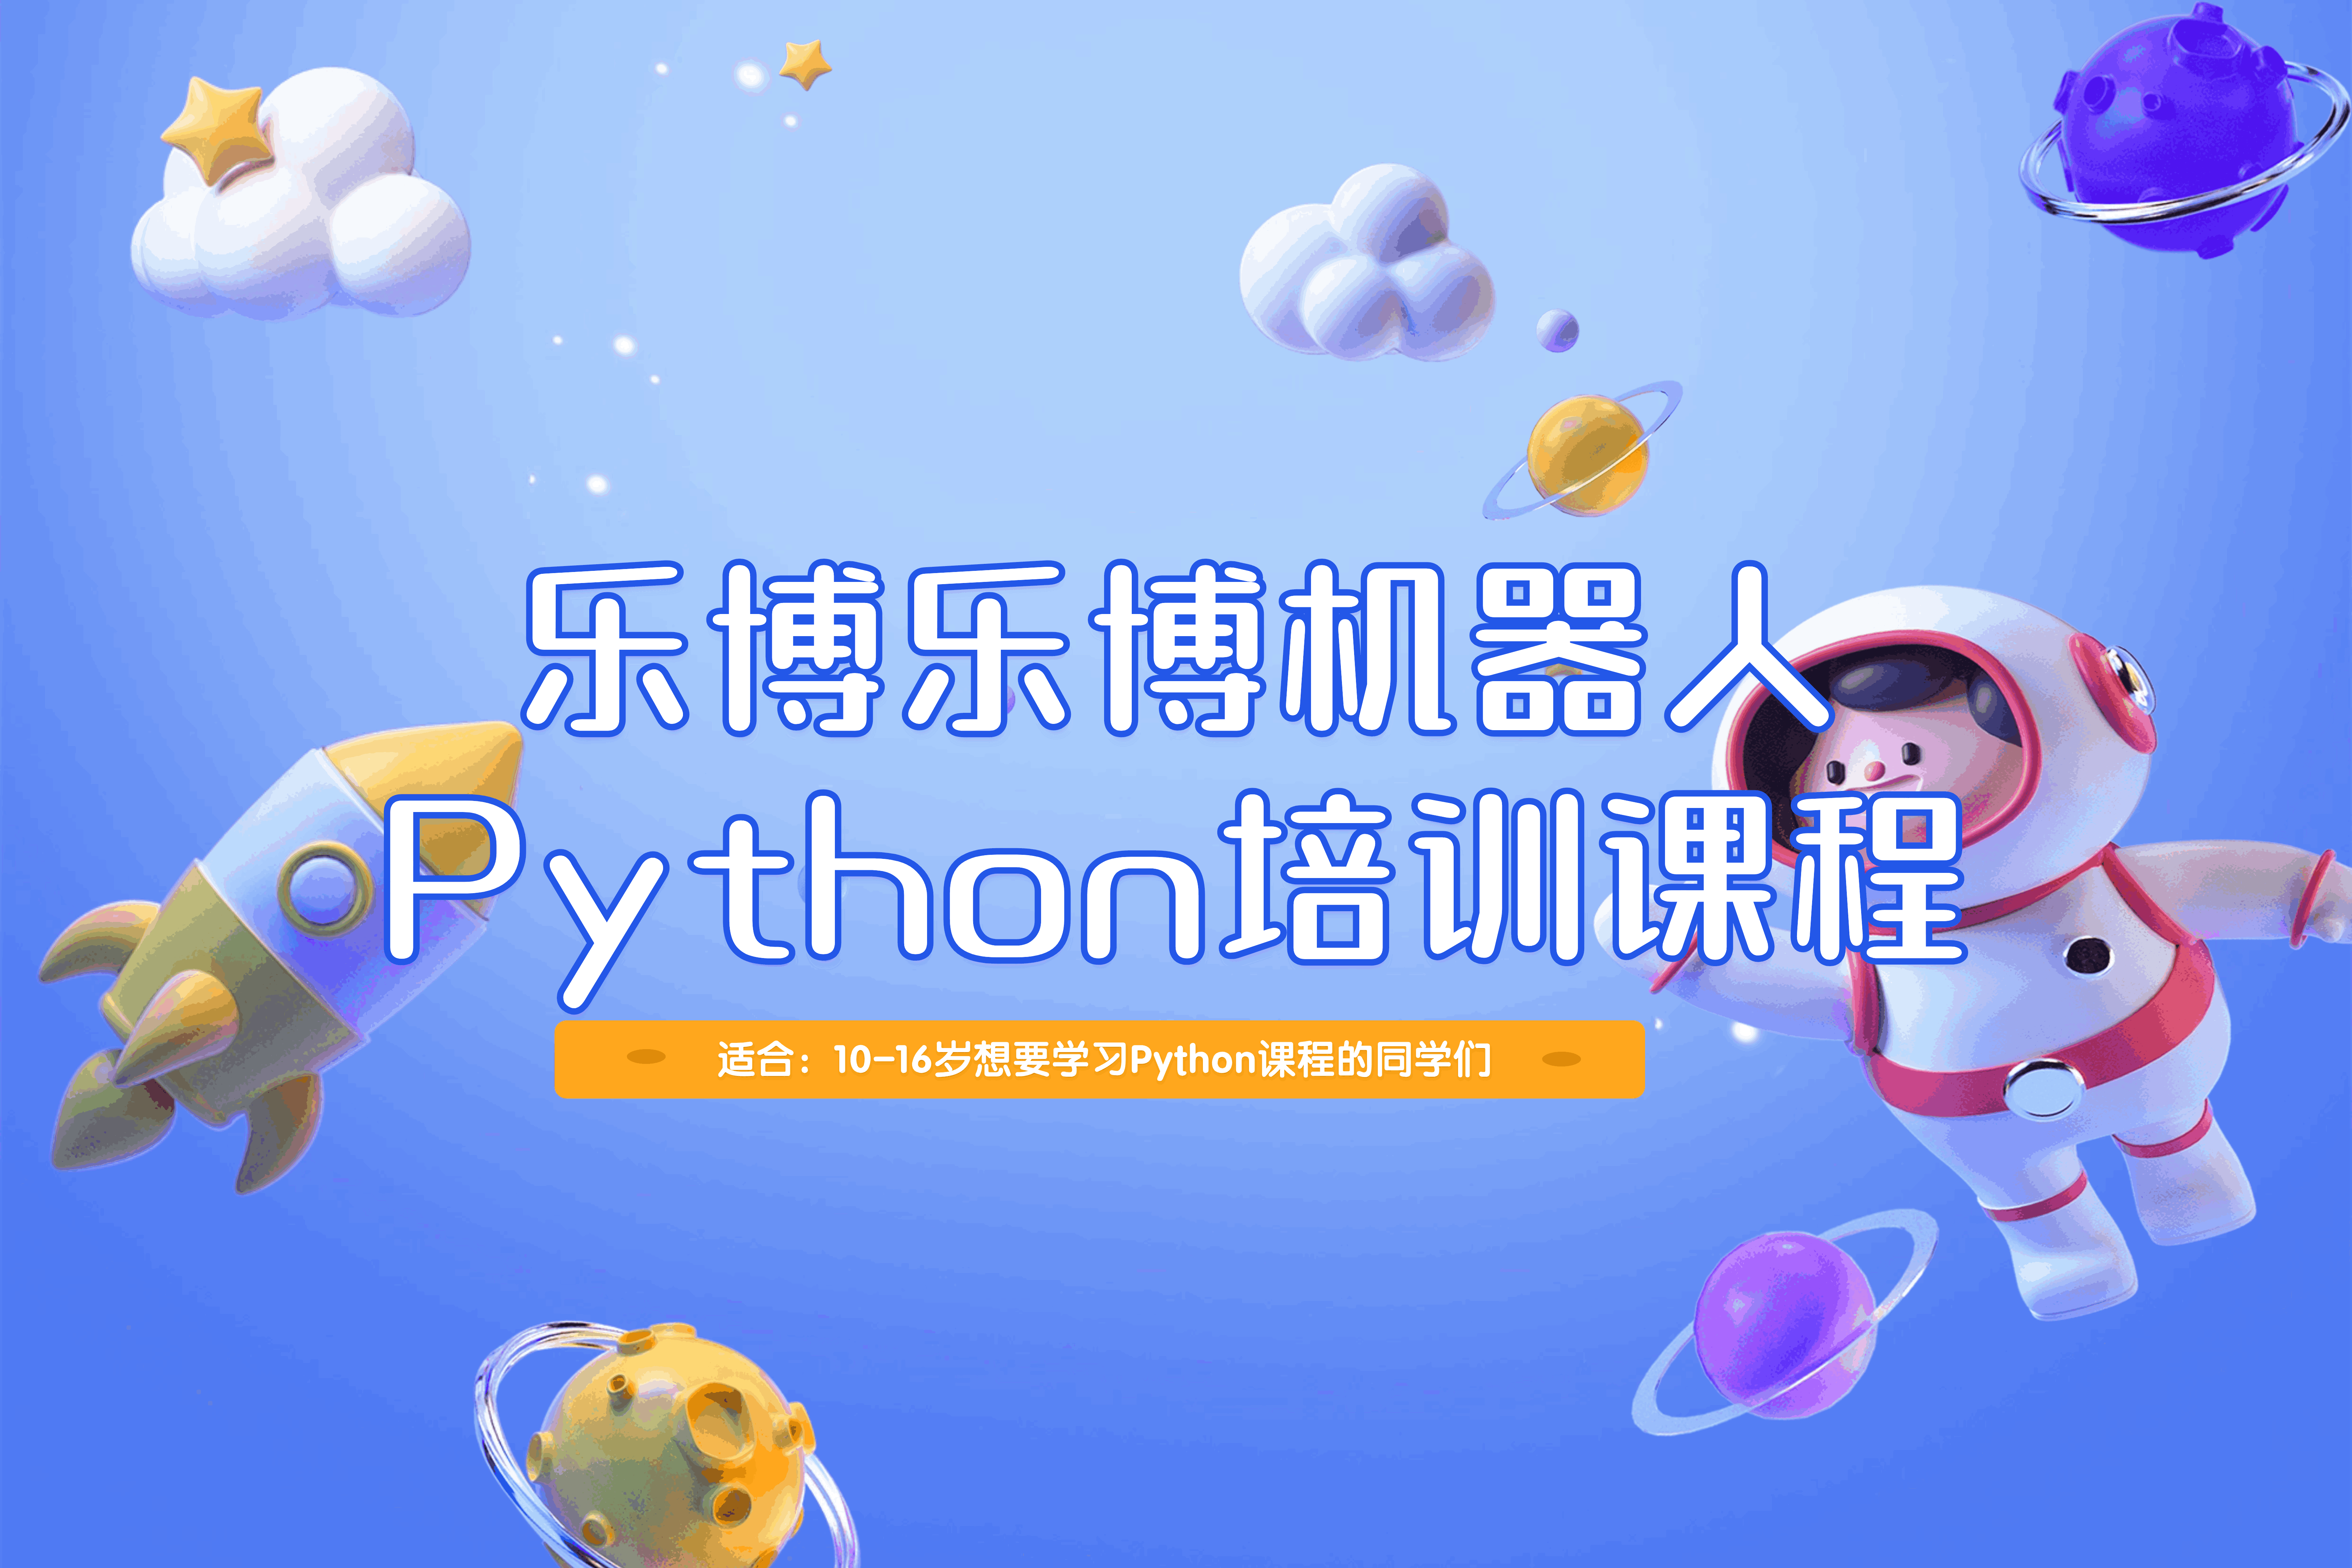 上海乐博乐博机器人上海乐博乐博Python培训课程图片